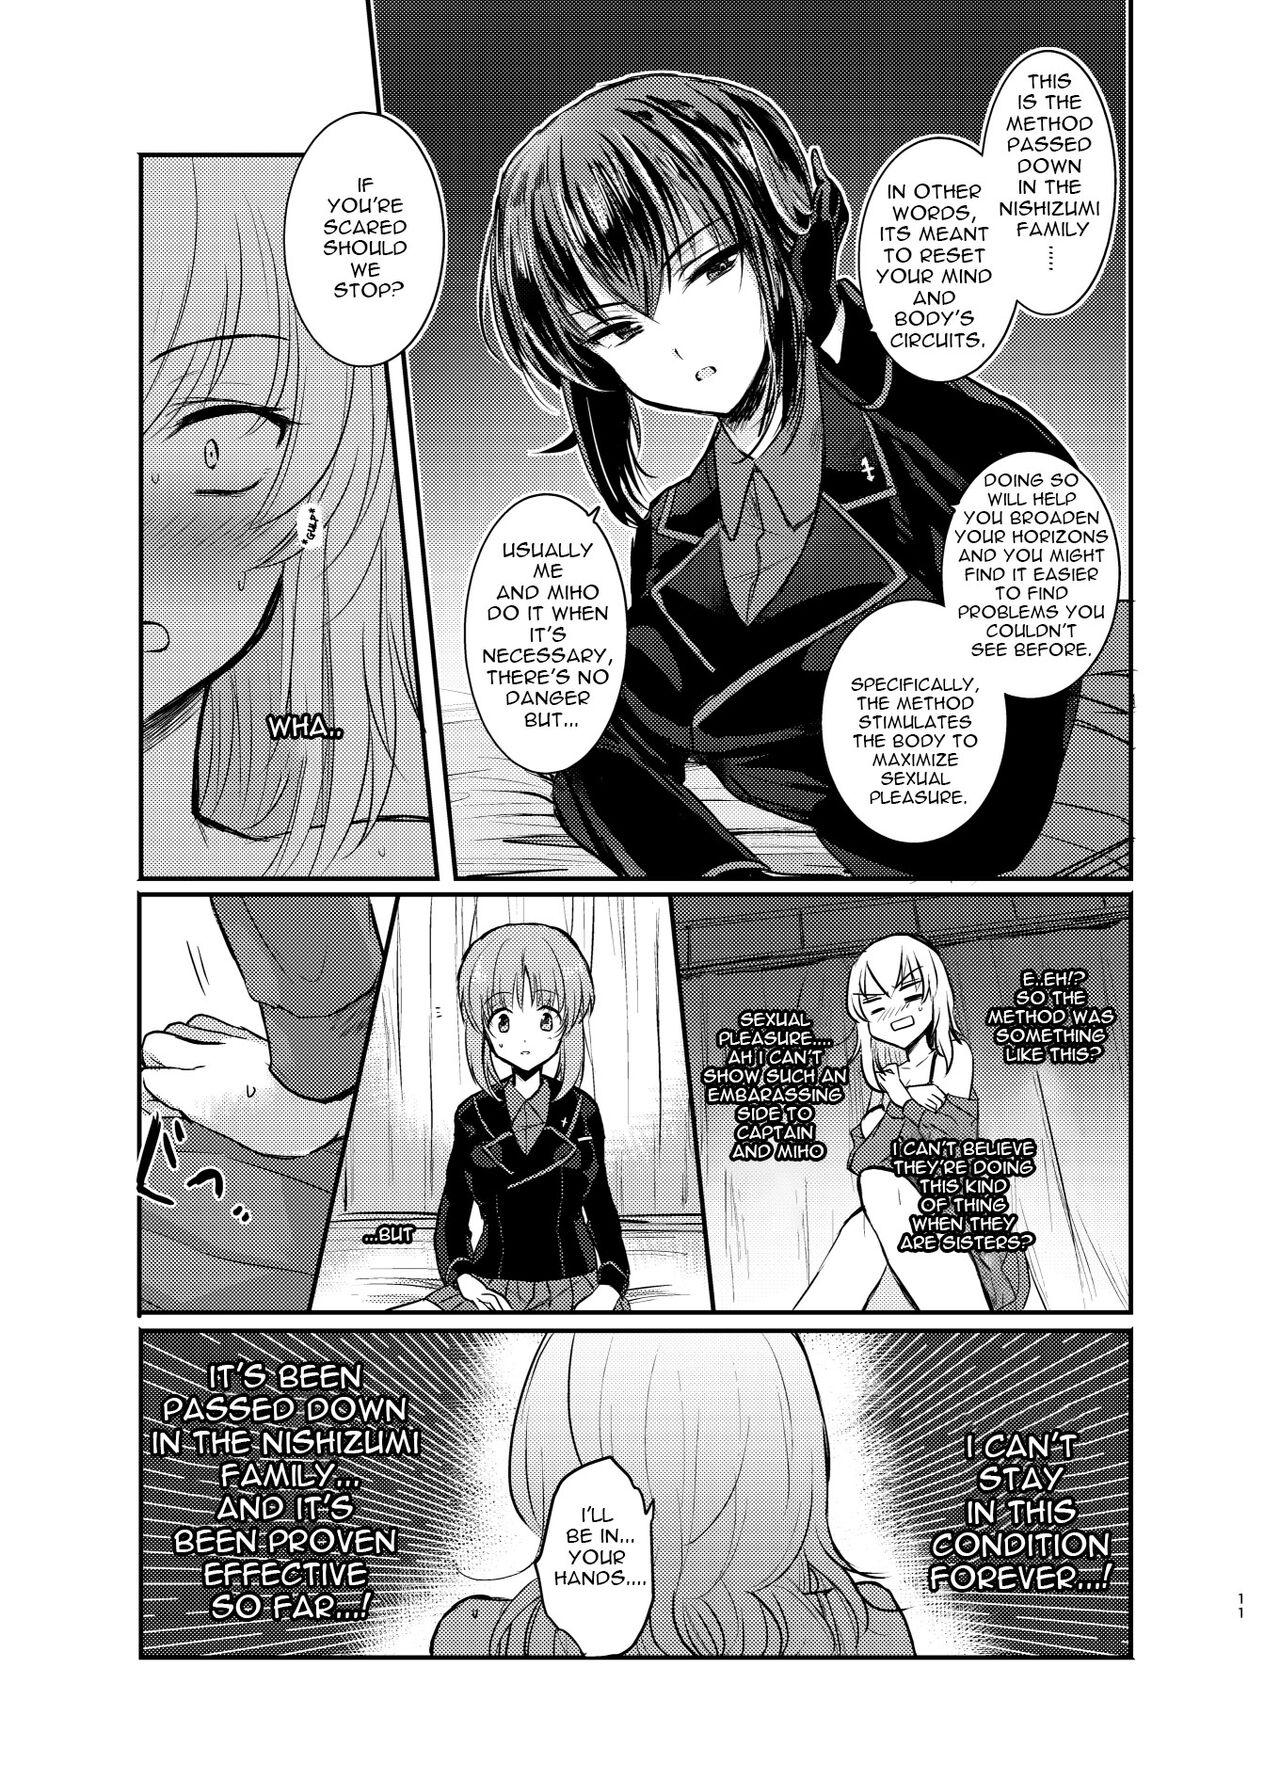 Gym Nishizumi Refre - Girls und panzer Curvy - Page 11